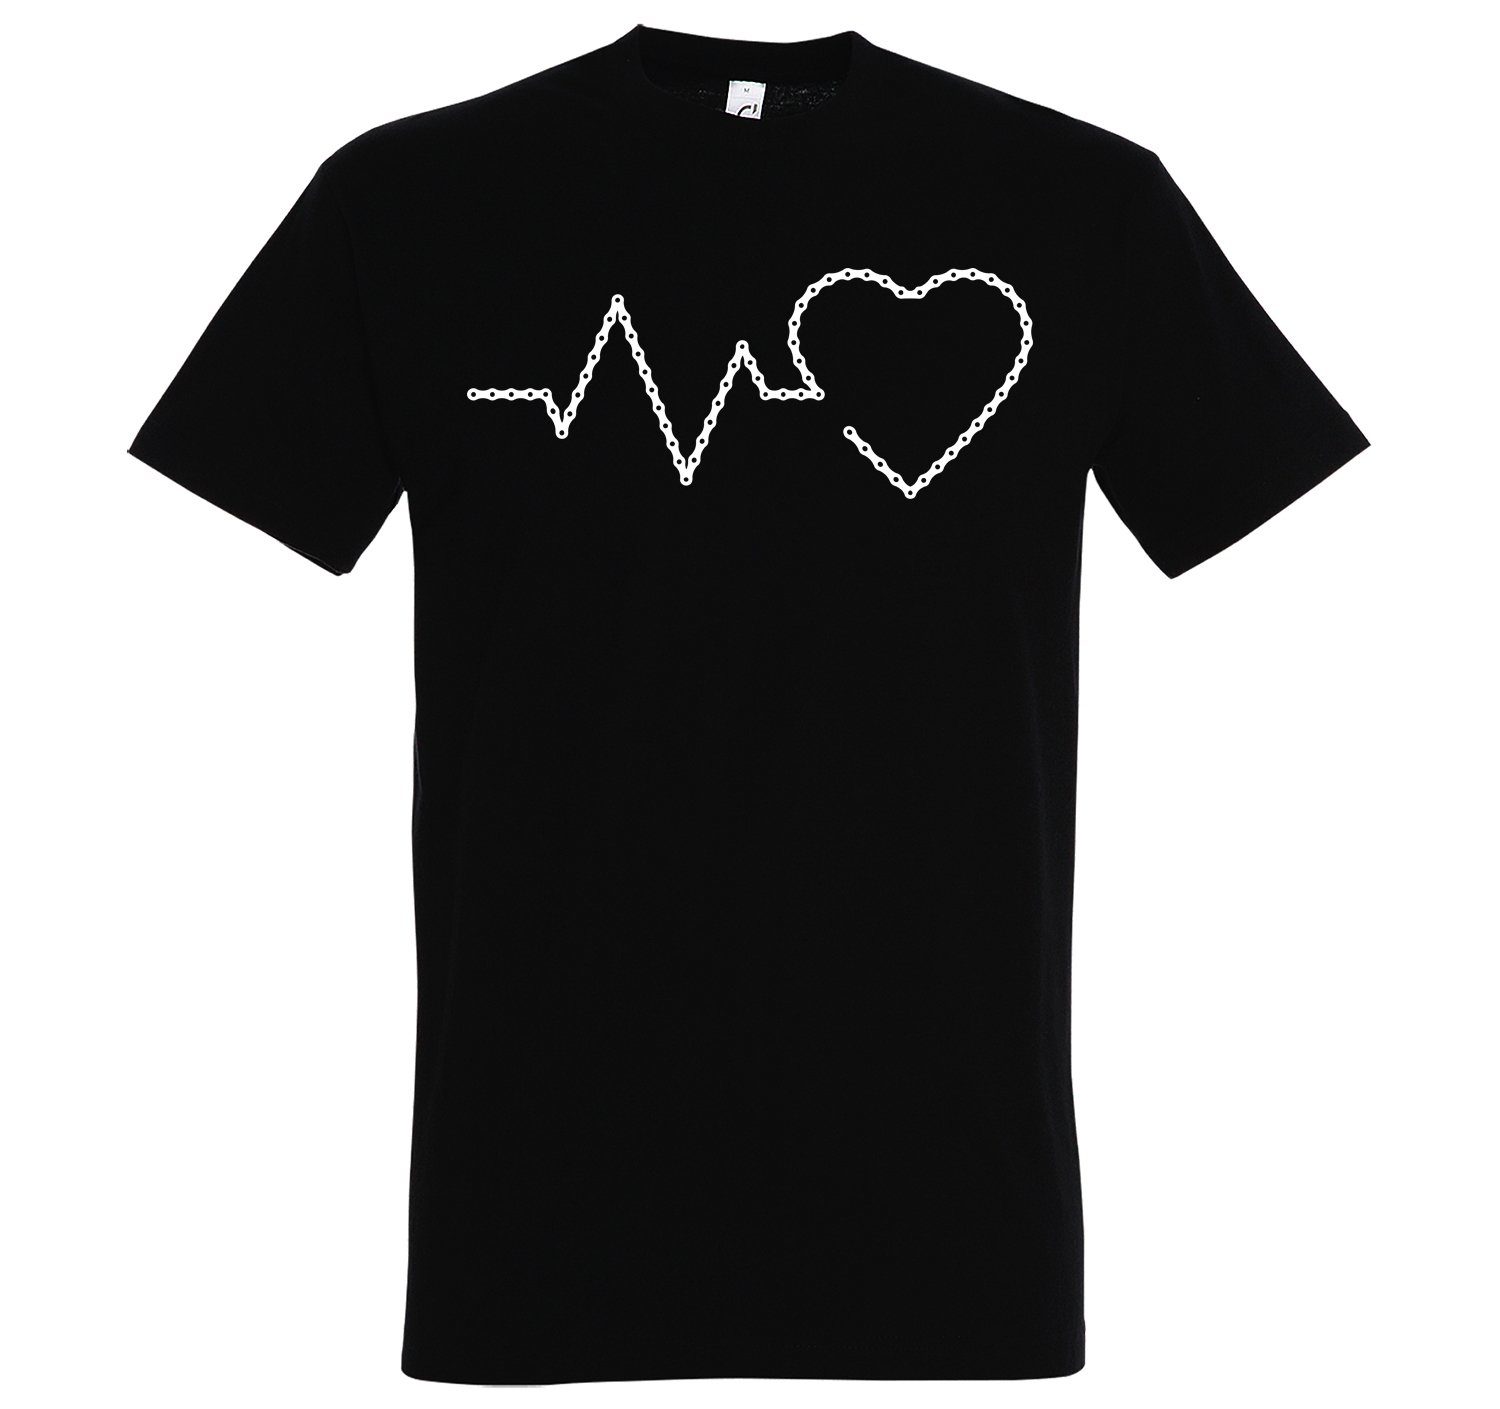 mit Fahrradkette Frontprint T-Shirt Designz T-Shirt Schwarz Herren Heartbeat trendigem Youth